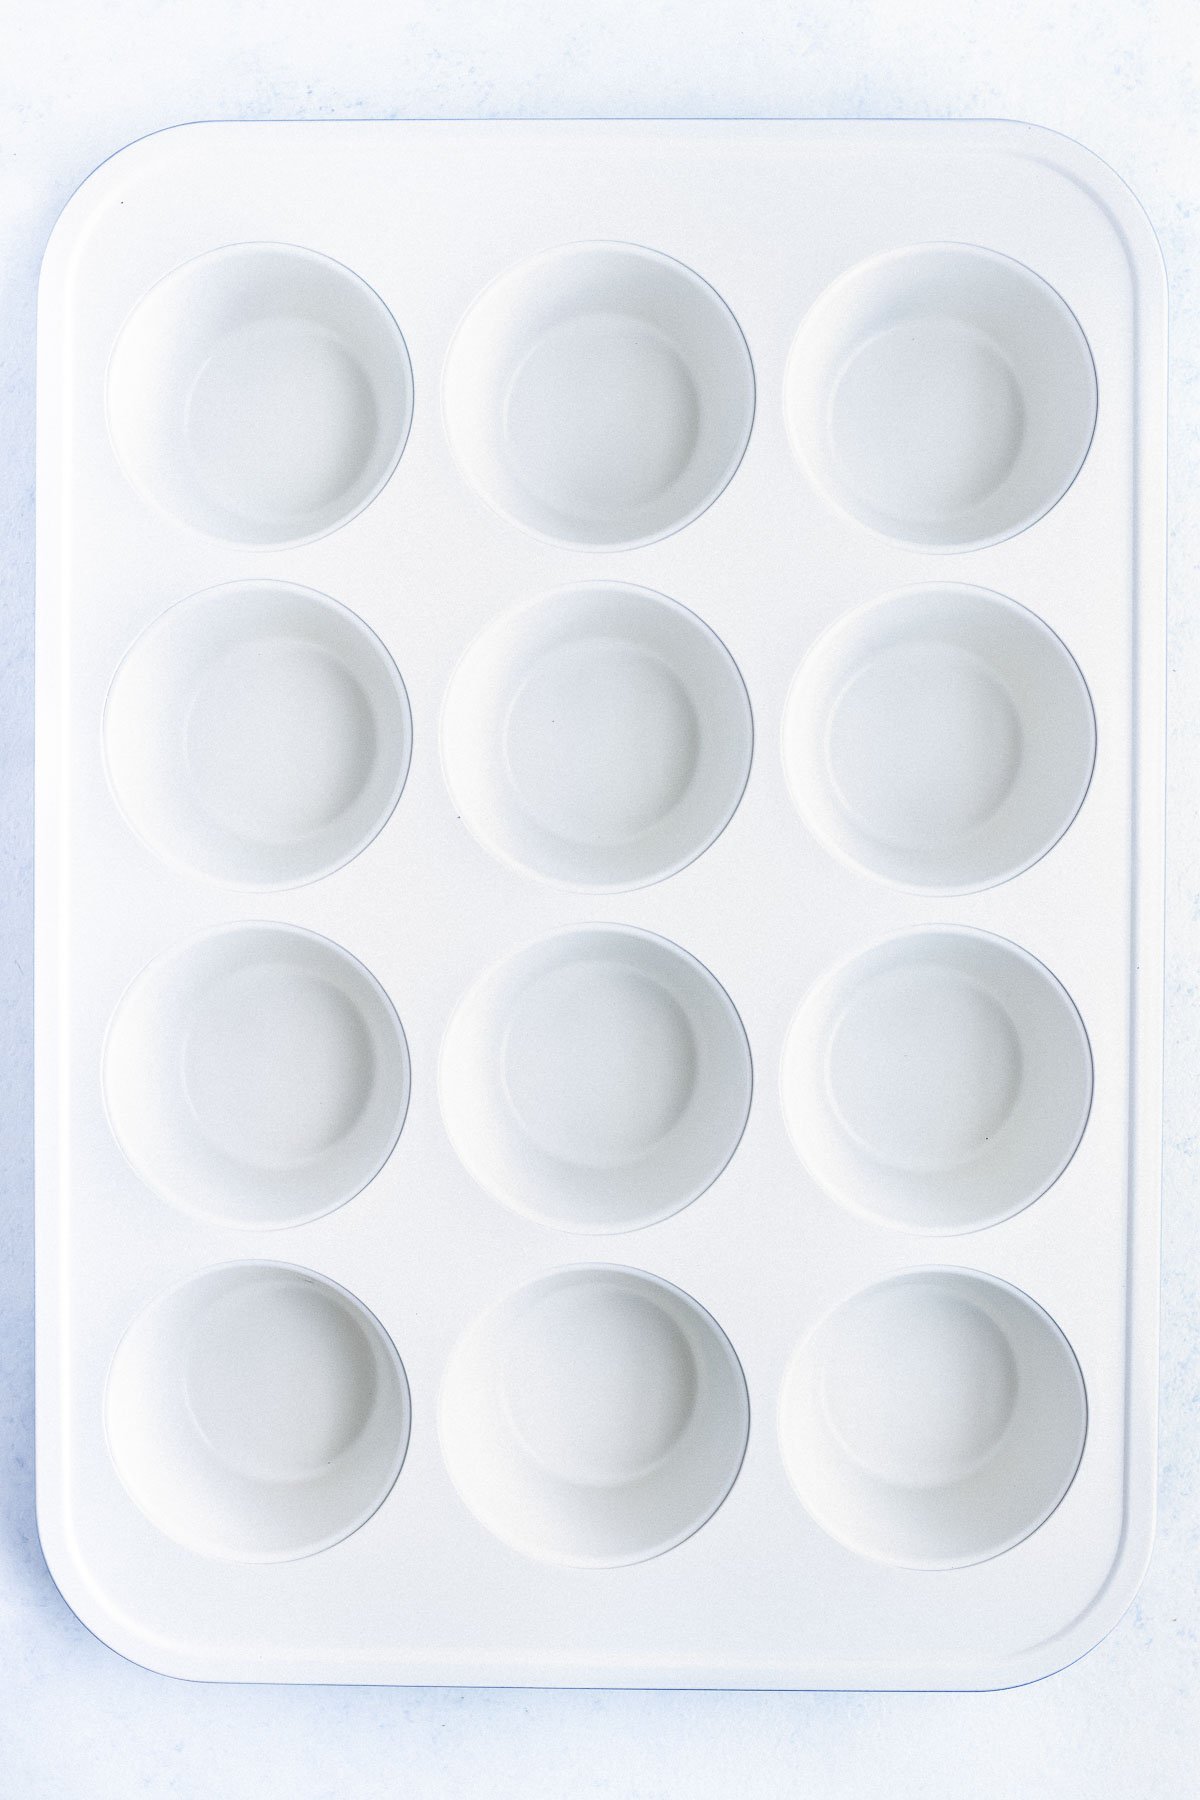 A ceramic non-stick muffin tray.